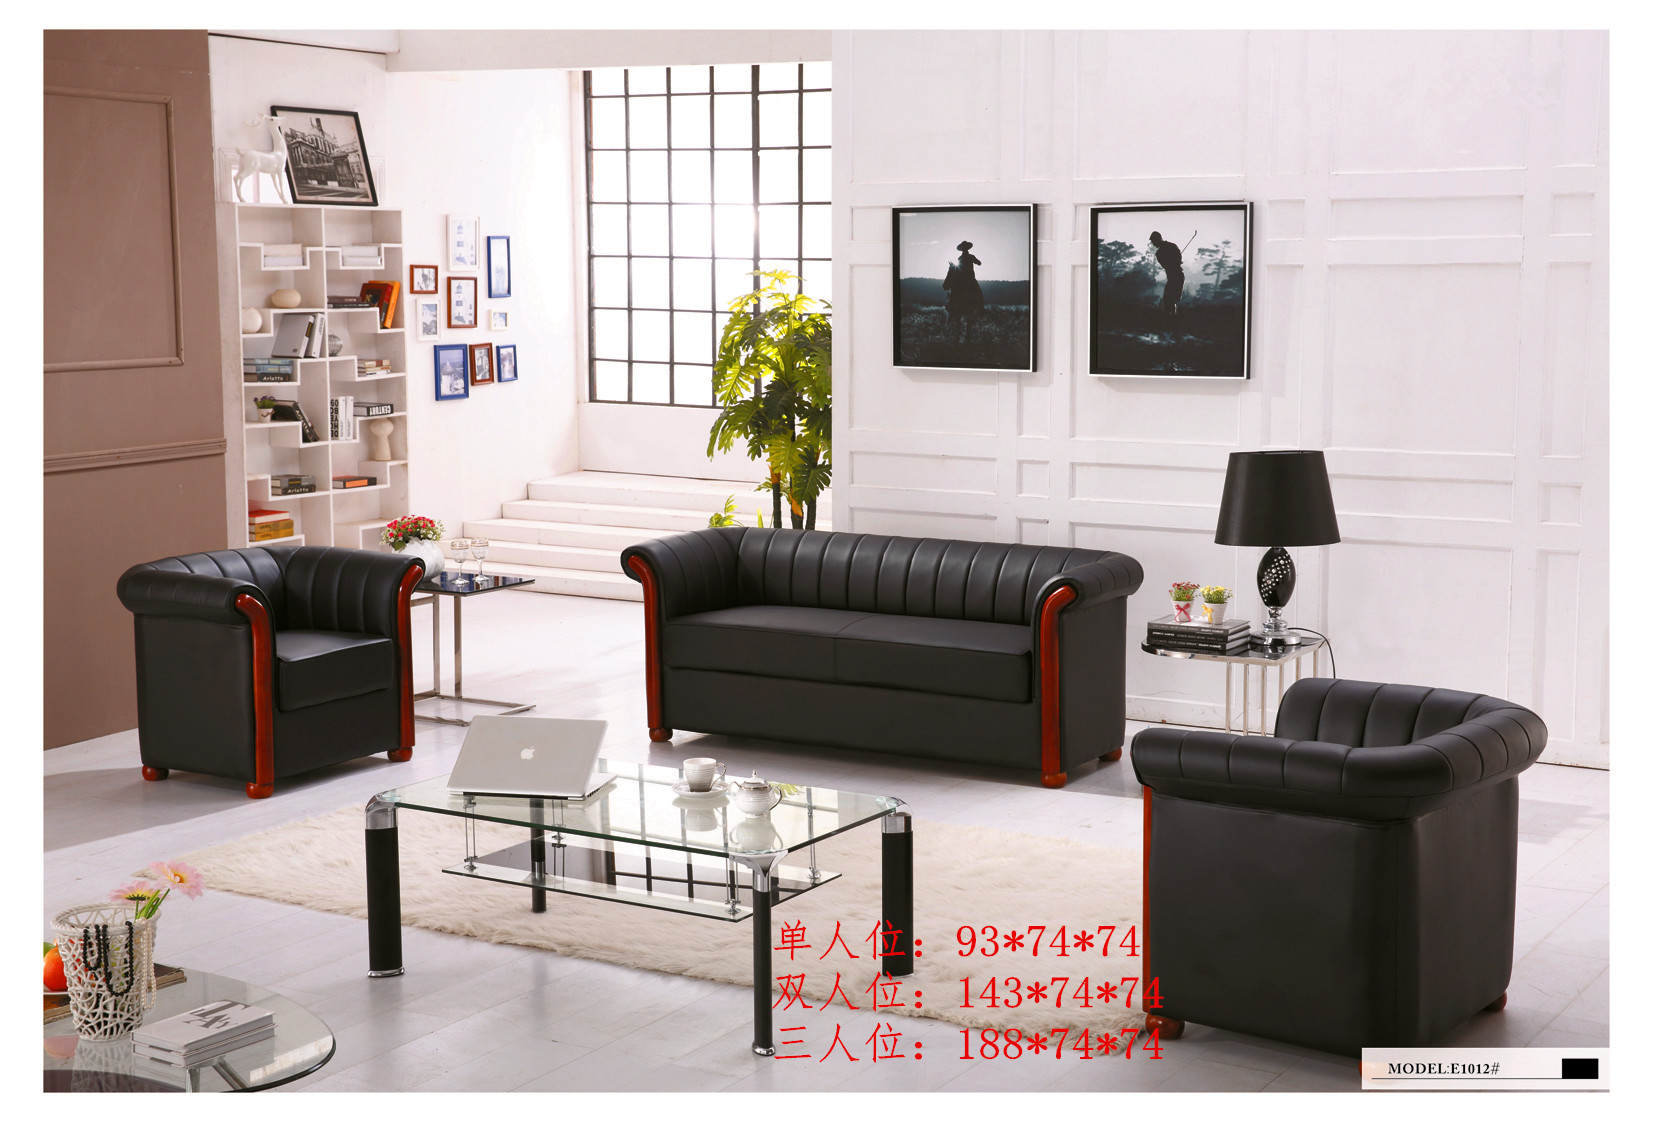 厂家直销办公沙发 简约沙发 会客接待沙发 休闲沙发 茶几组合1+1+3 E-211#图片